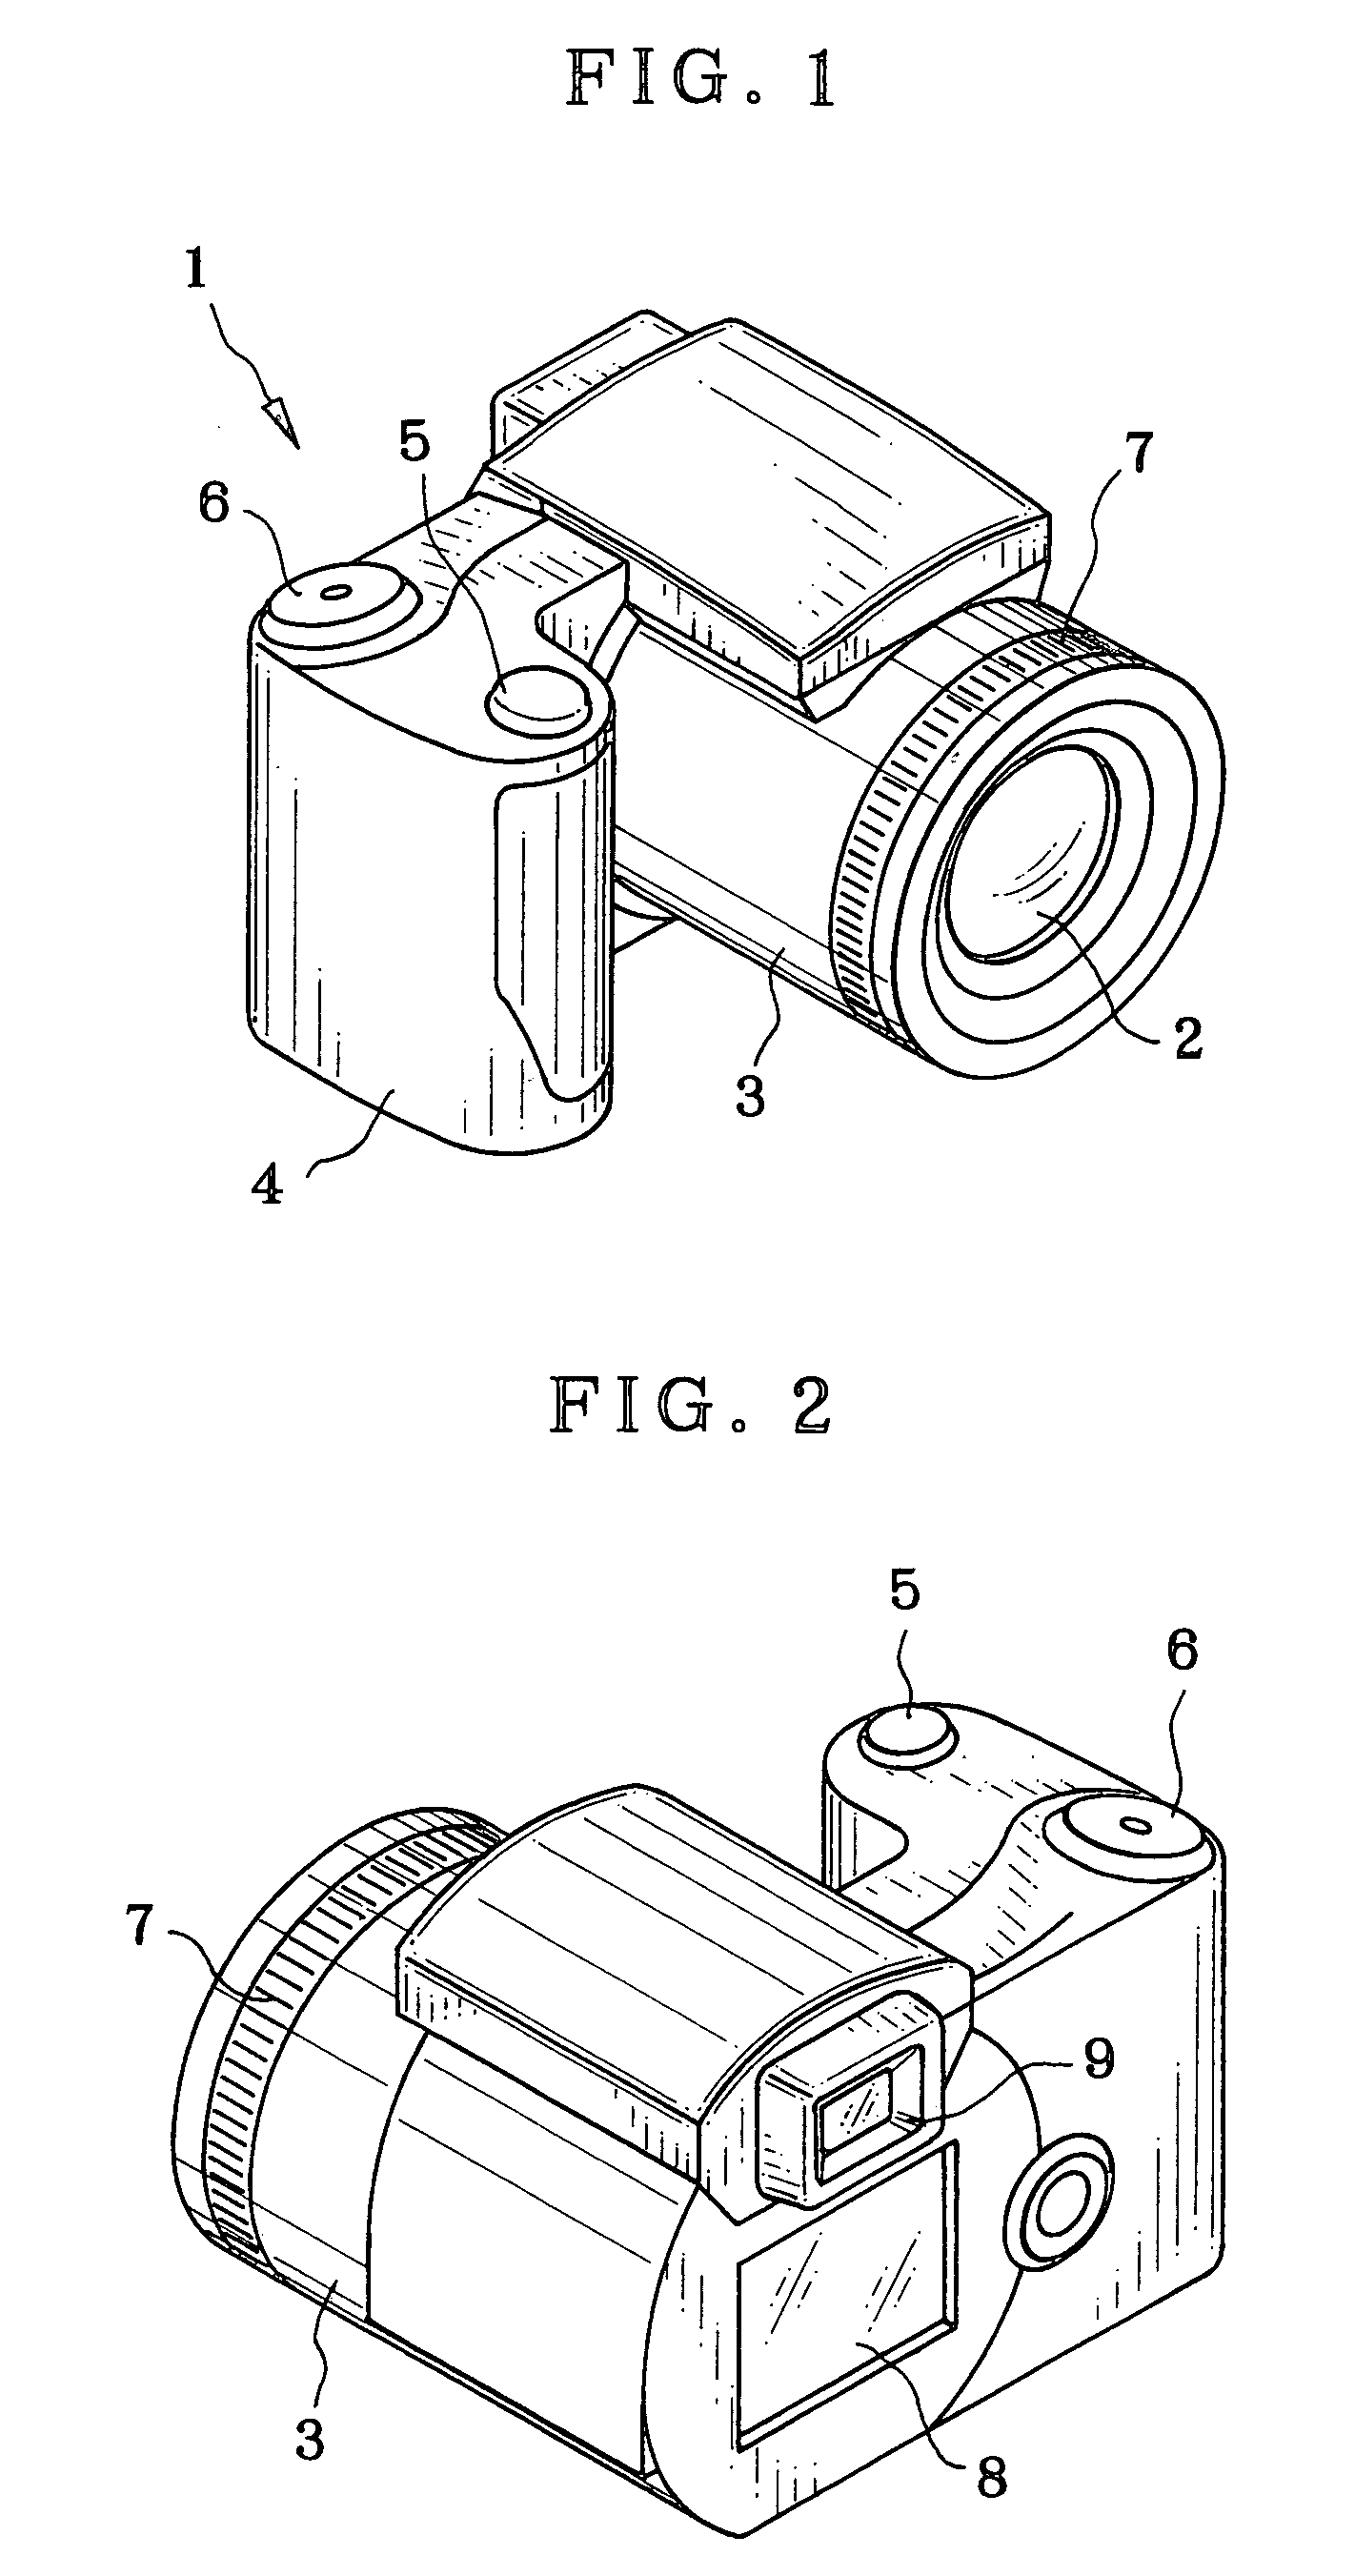 Manual focus device and autofocus camera